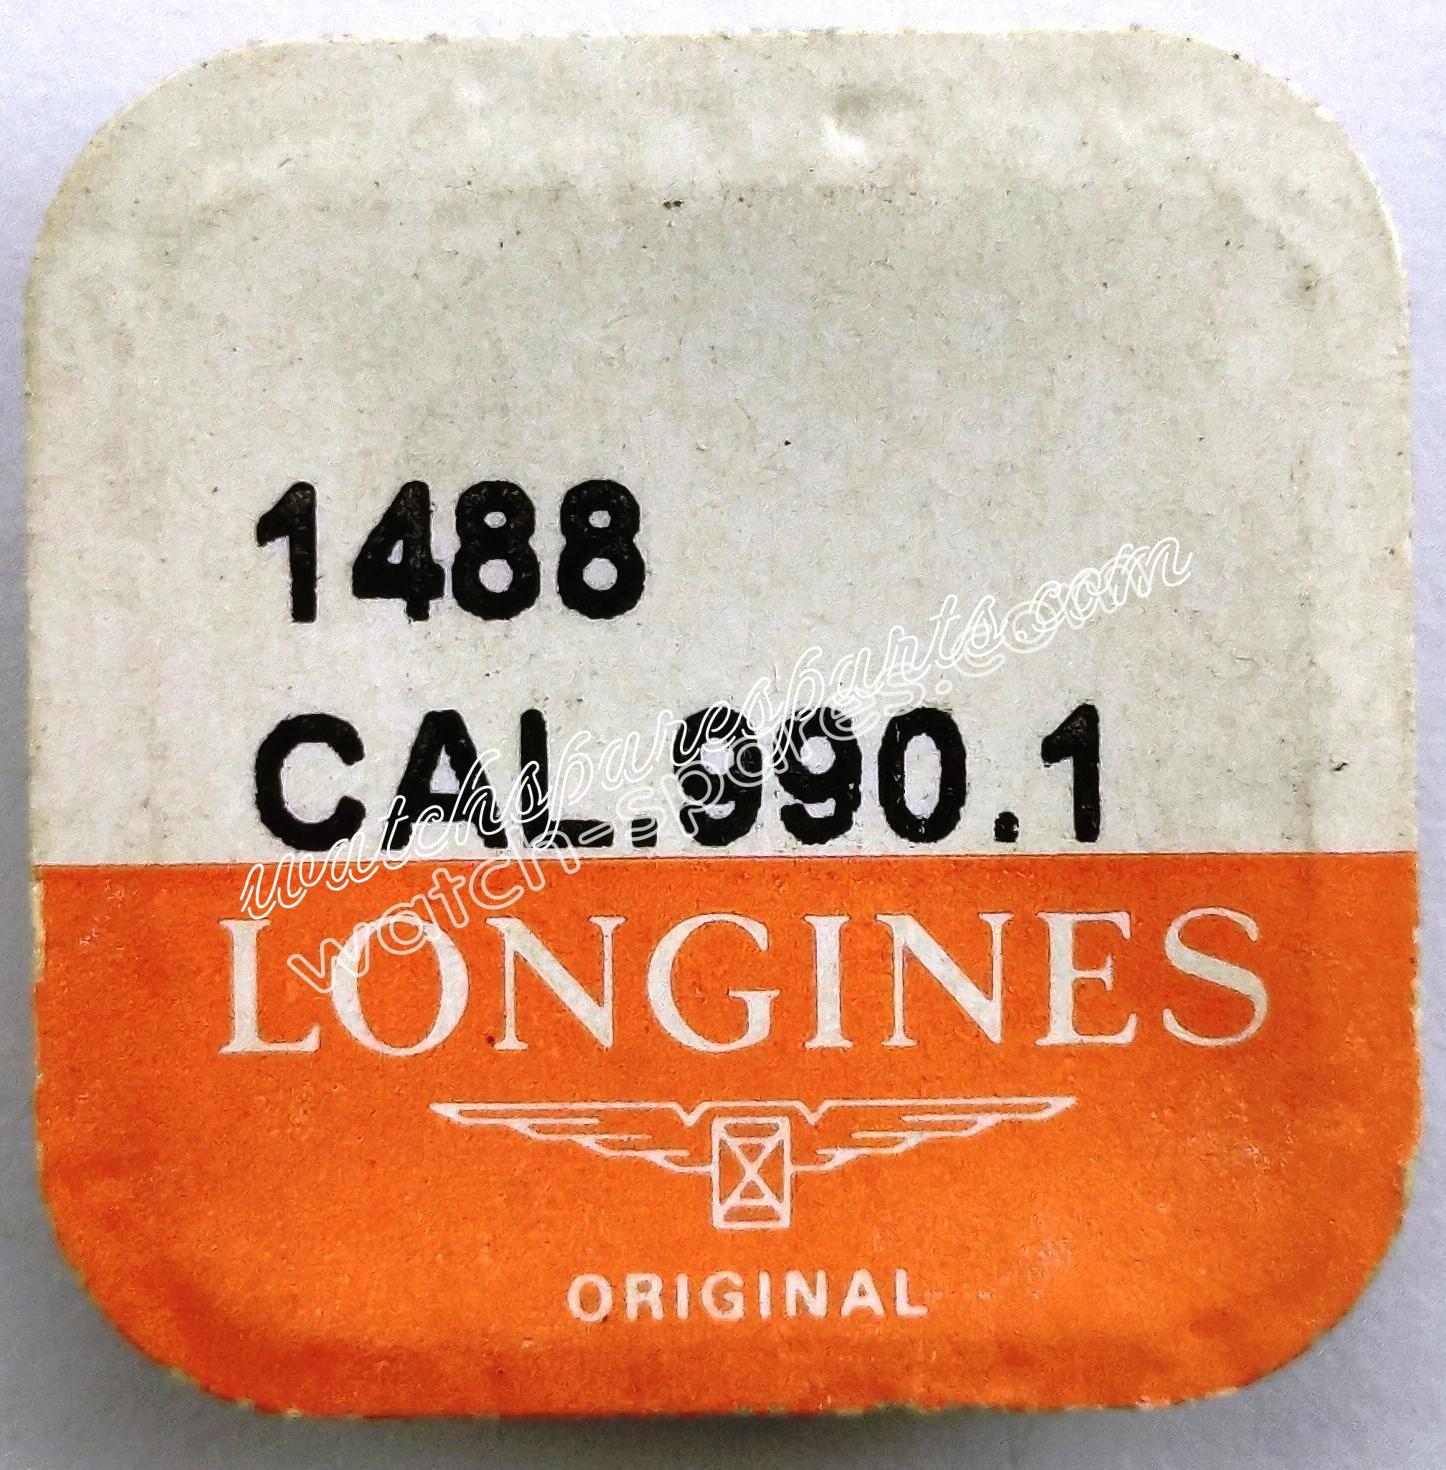 Longines 990.1 Part 1488 Pawl Wheel Mounted